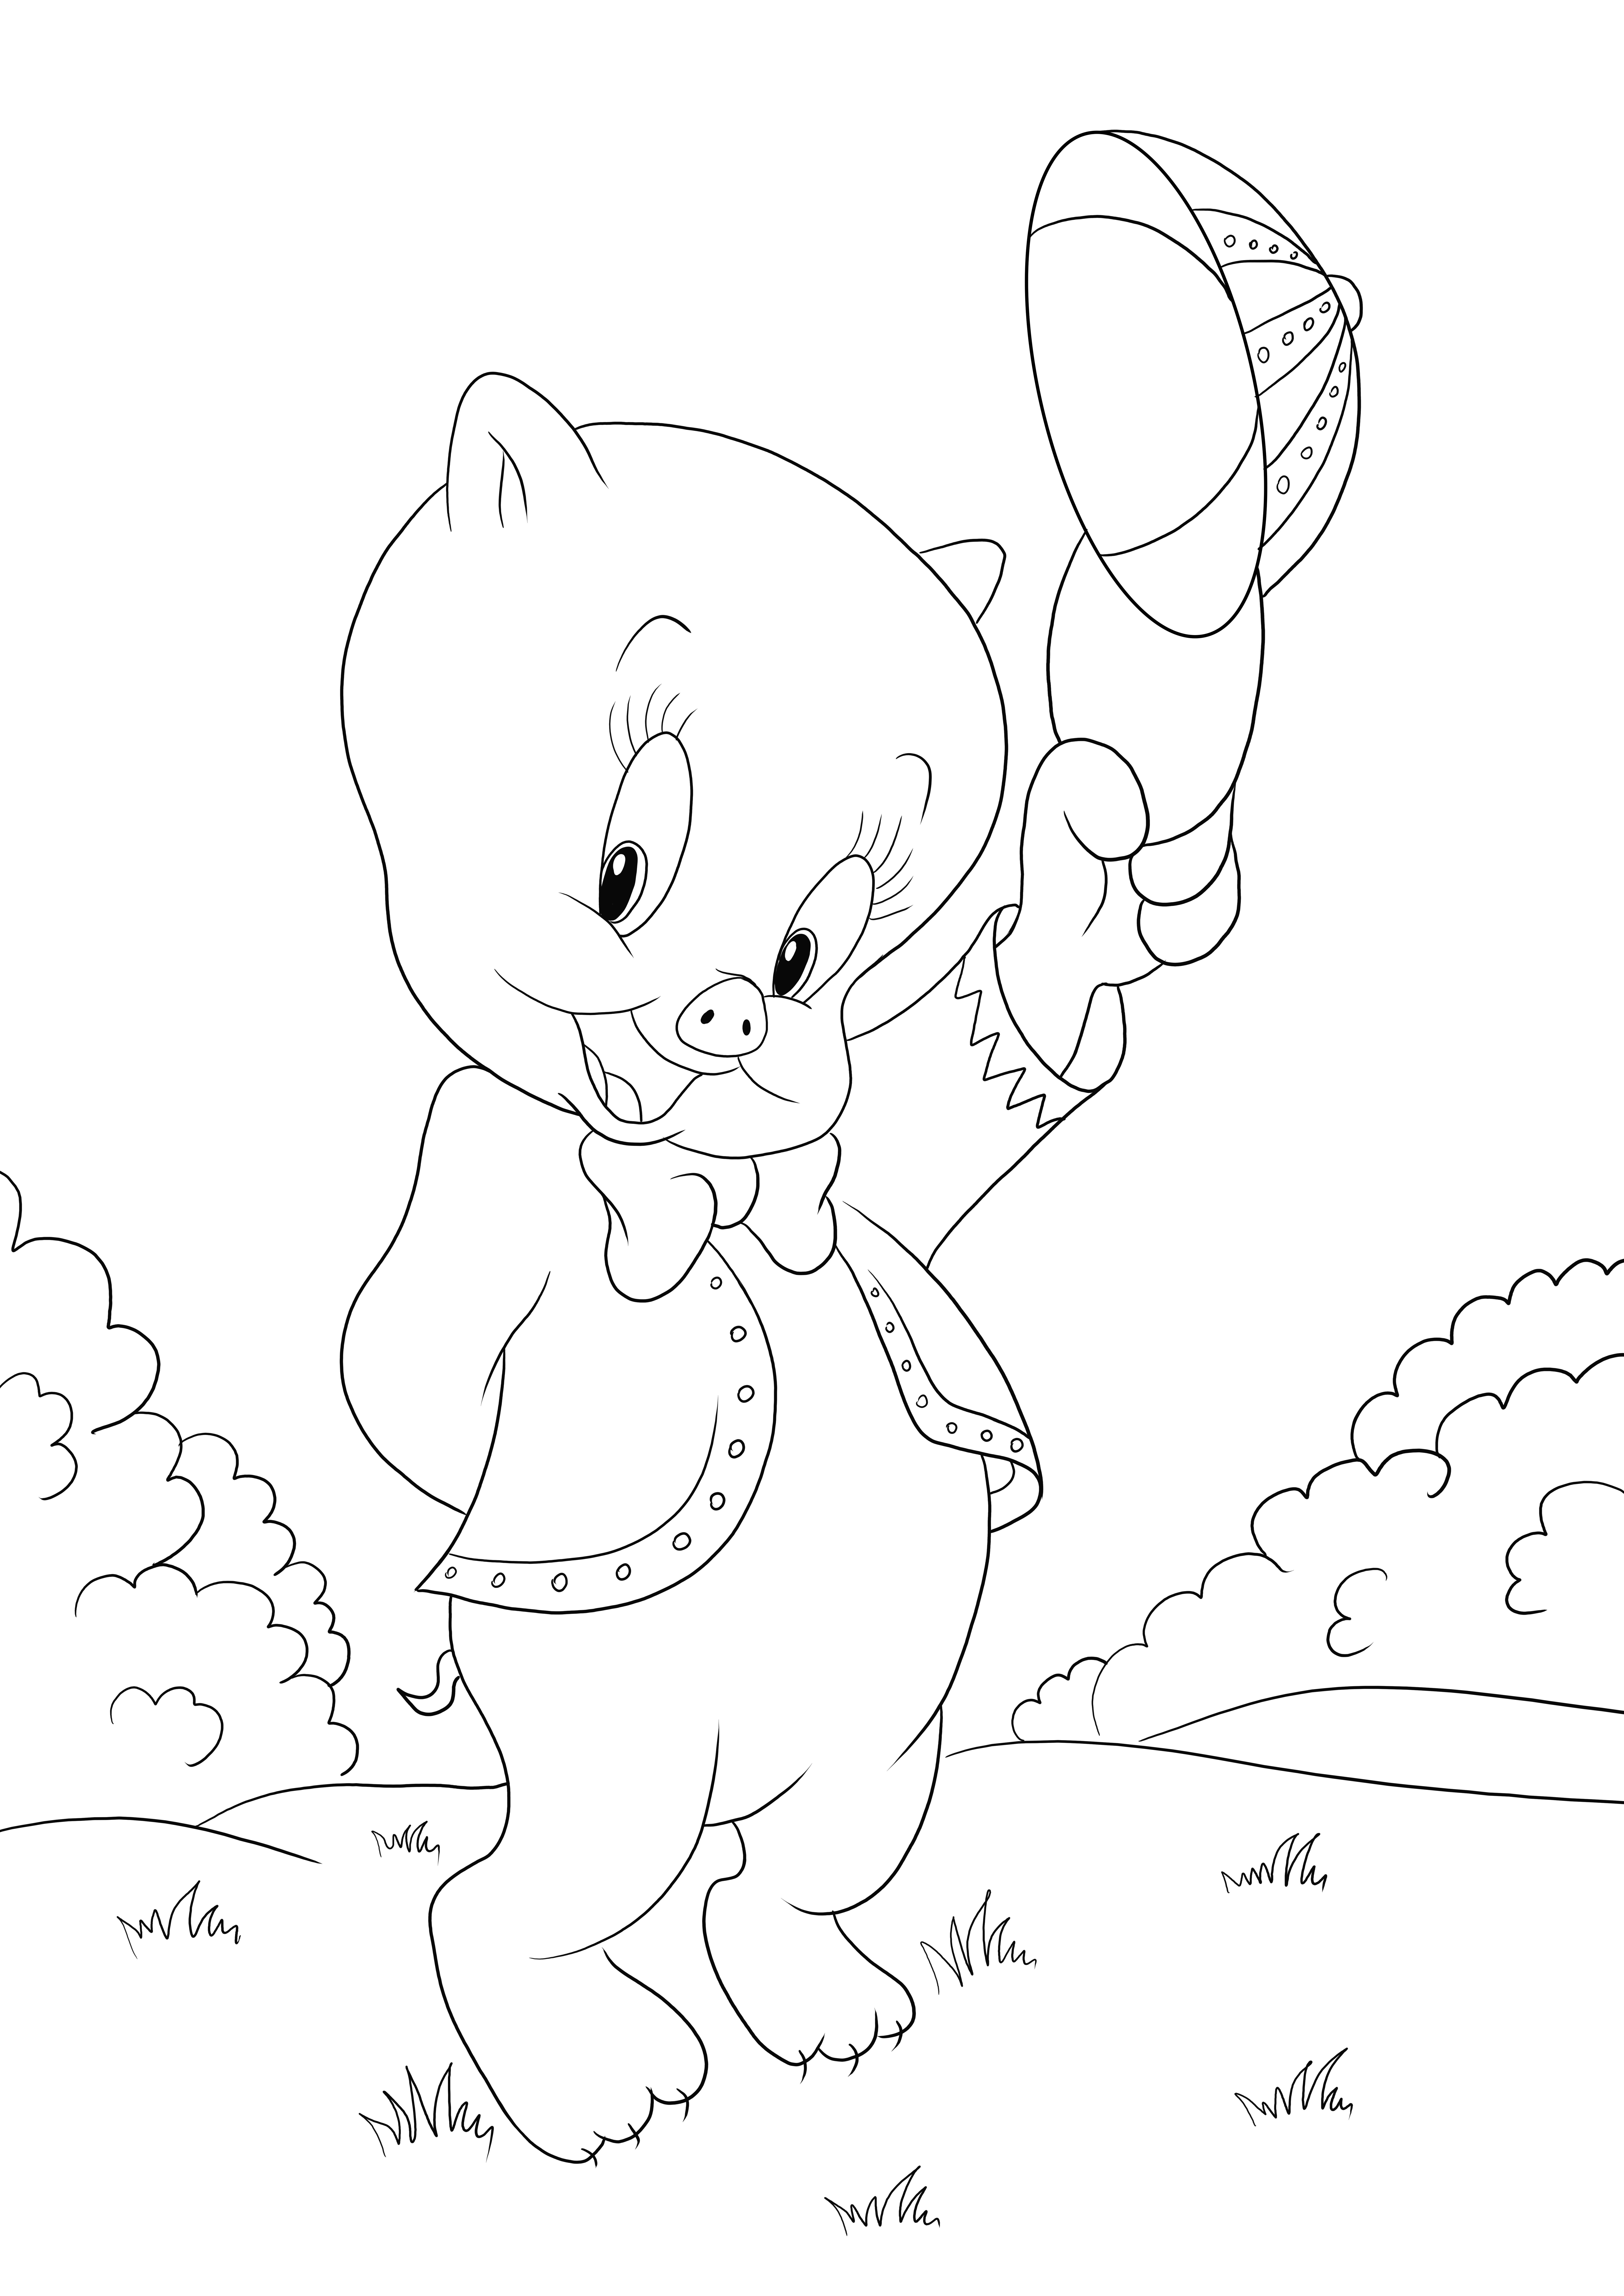 Porky de Looney Tunes feuille de coloriage simple gratuite à imprimer